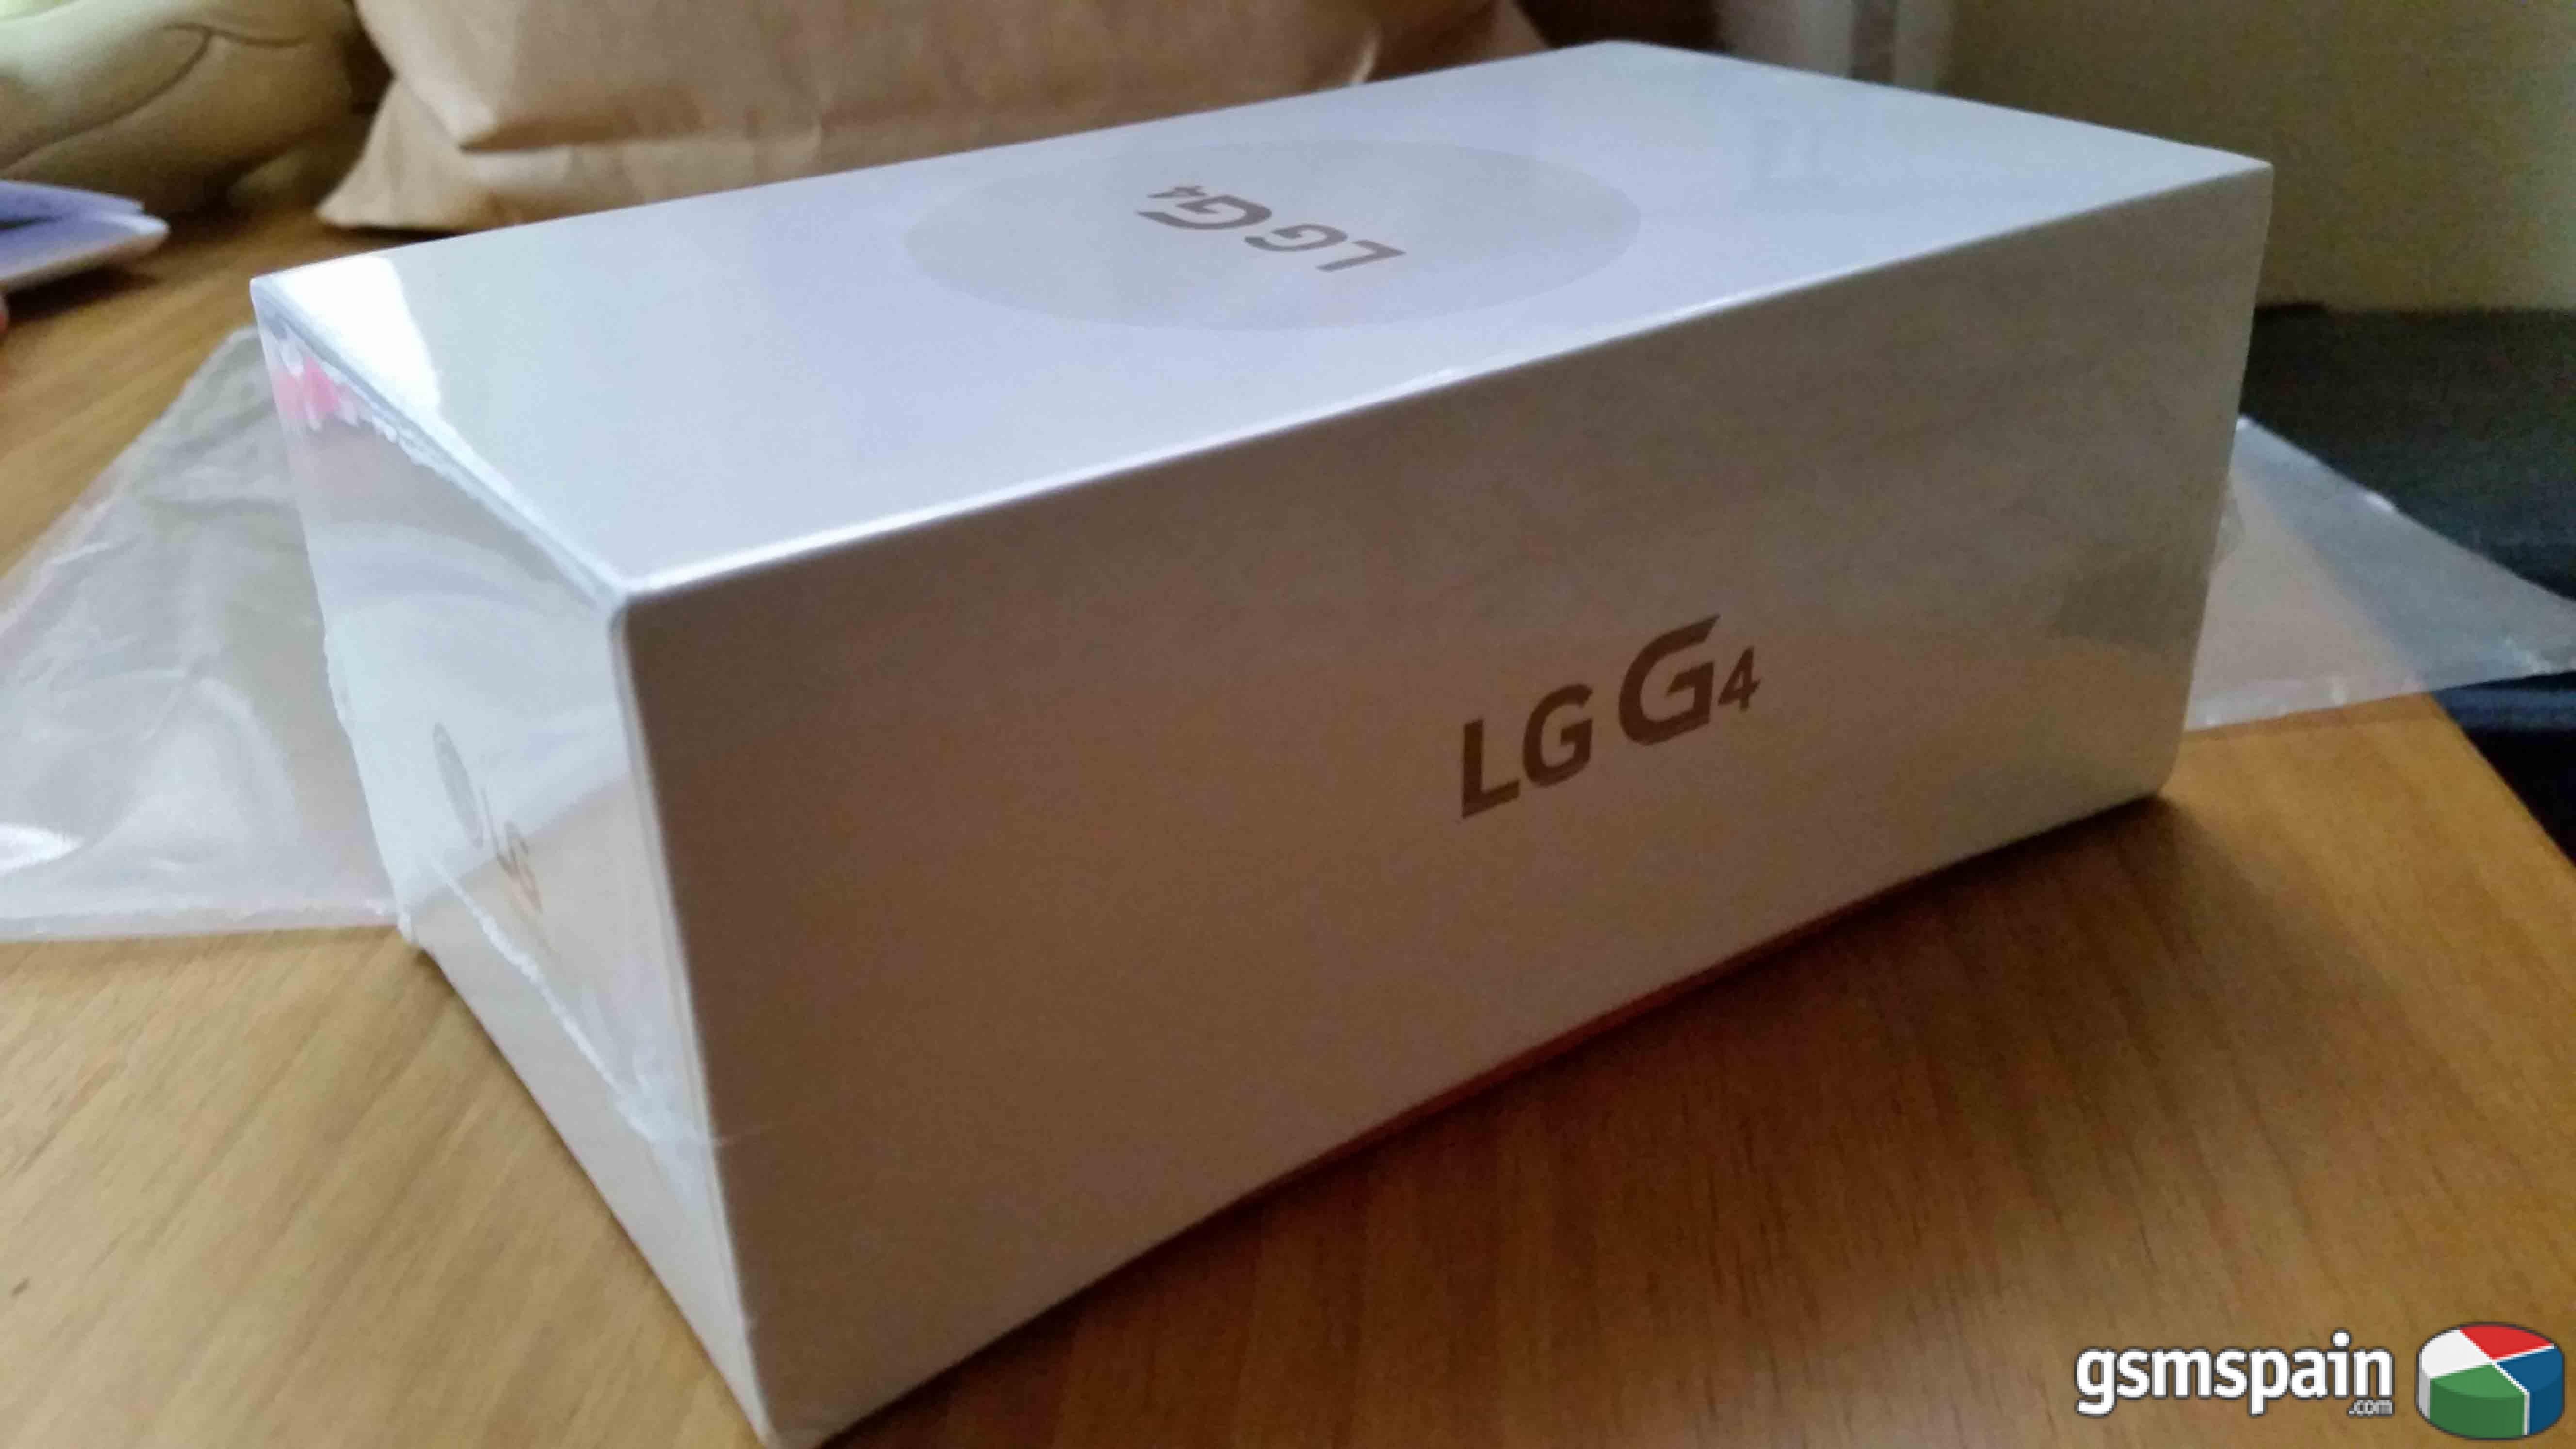 [VENDO] LG G4 / nuevo con precinto